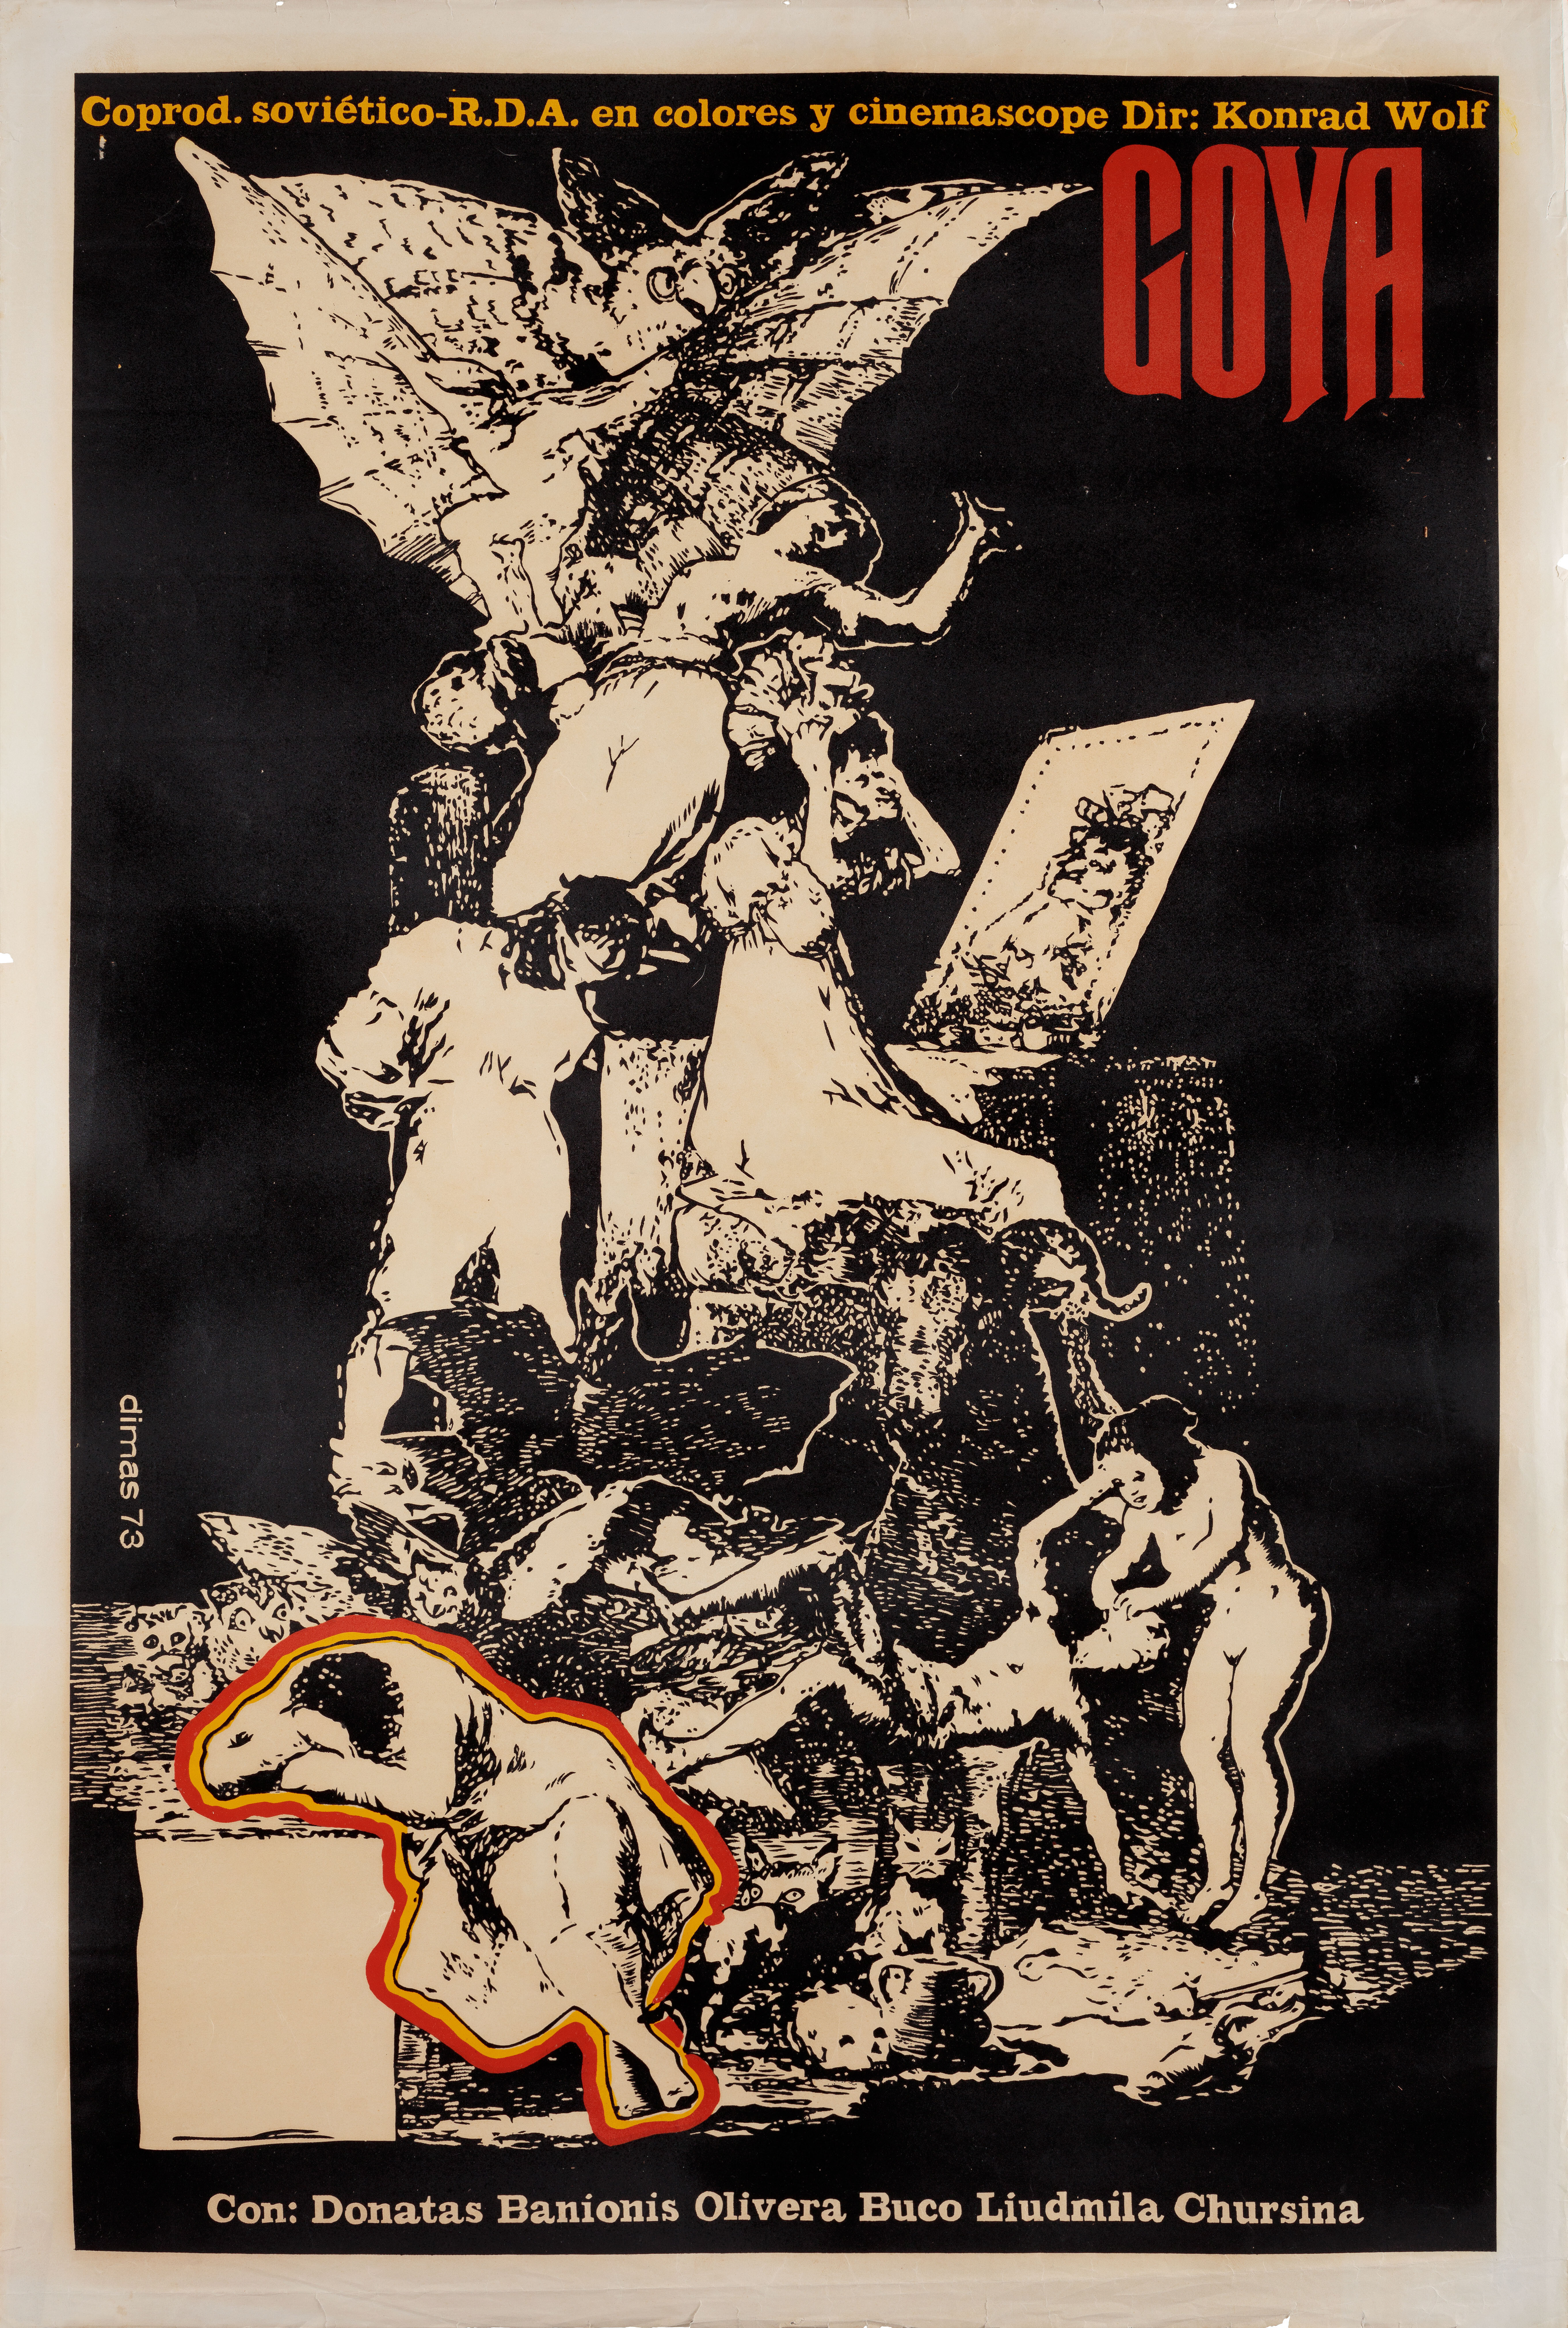 Гойя, или тяжкий путь познания (режиссёр Конрад Вольф, 1971), кубинский постер к фильму, автор Димас, 1973 год